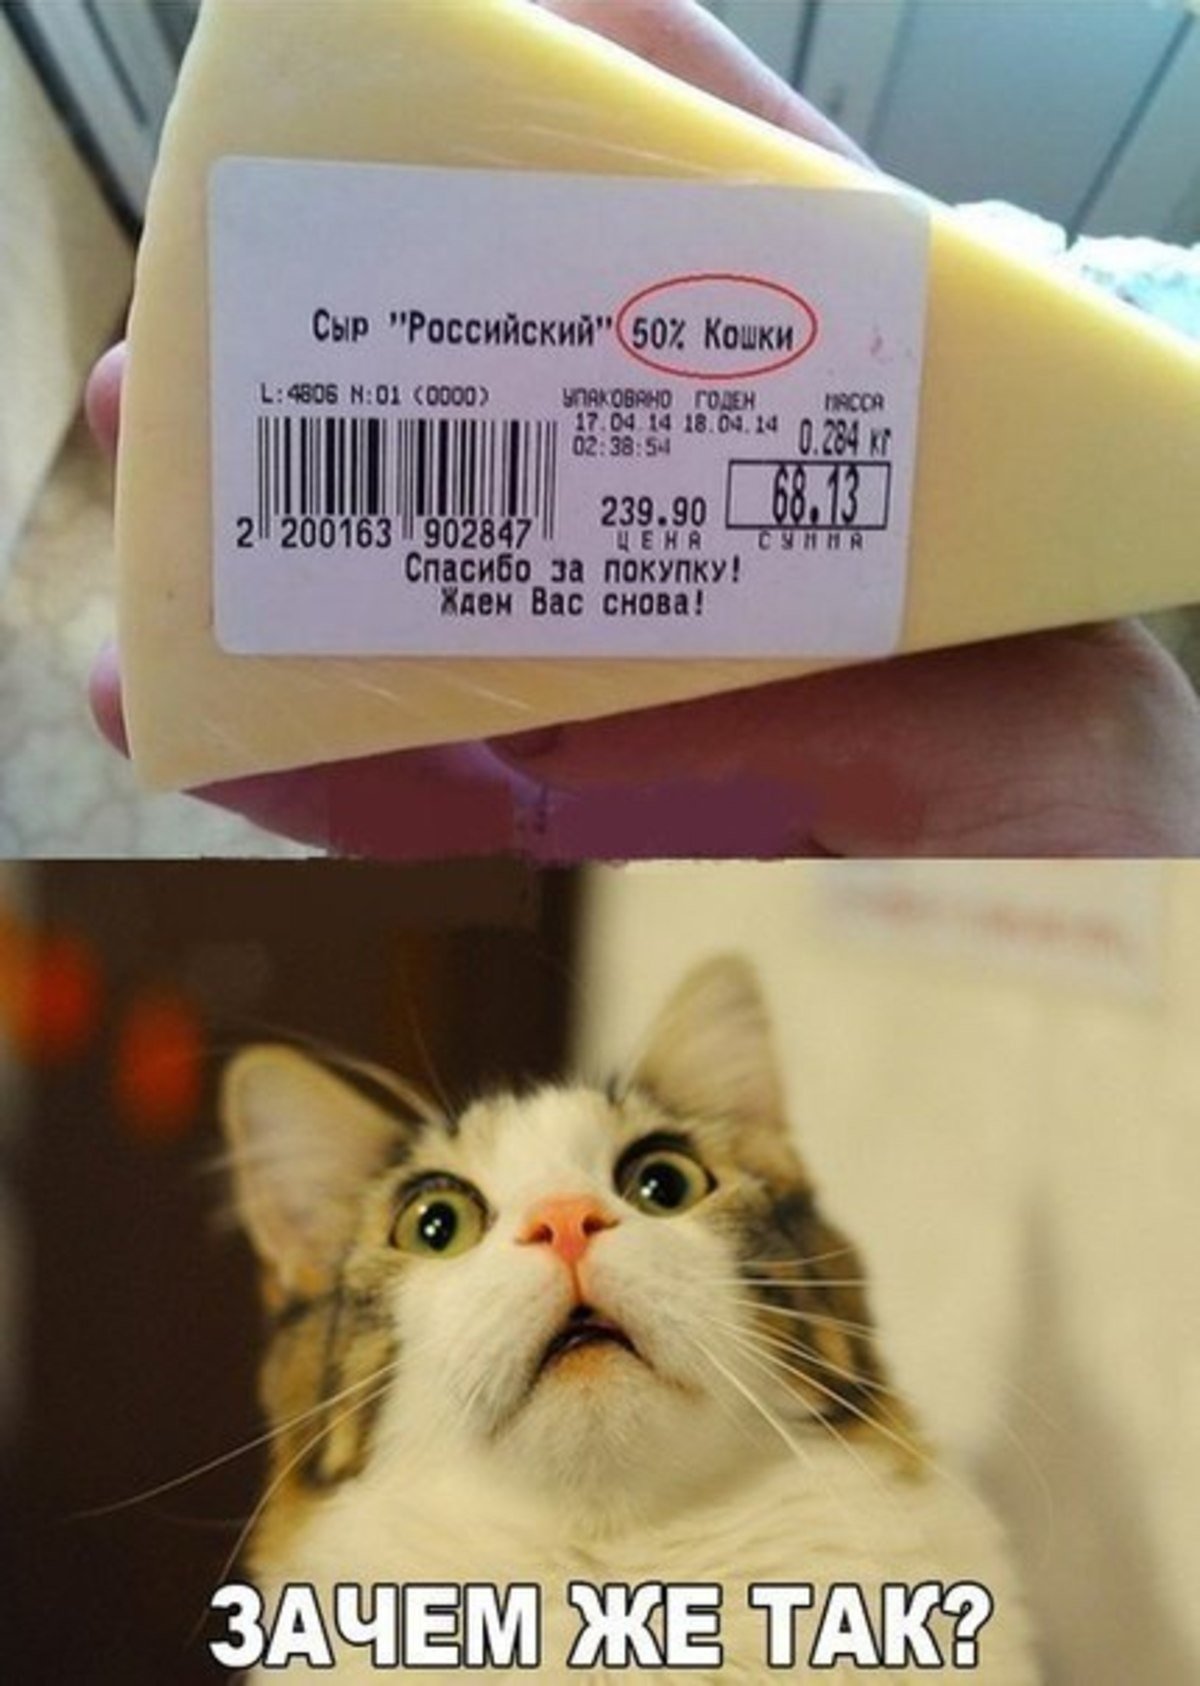 Сыр смешно